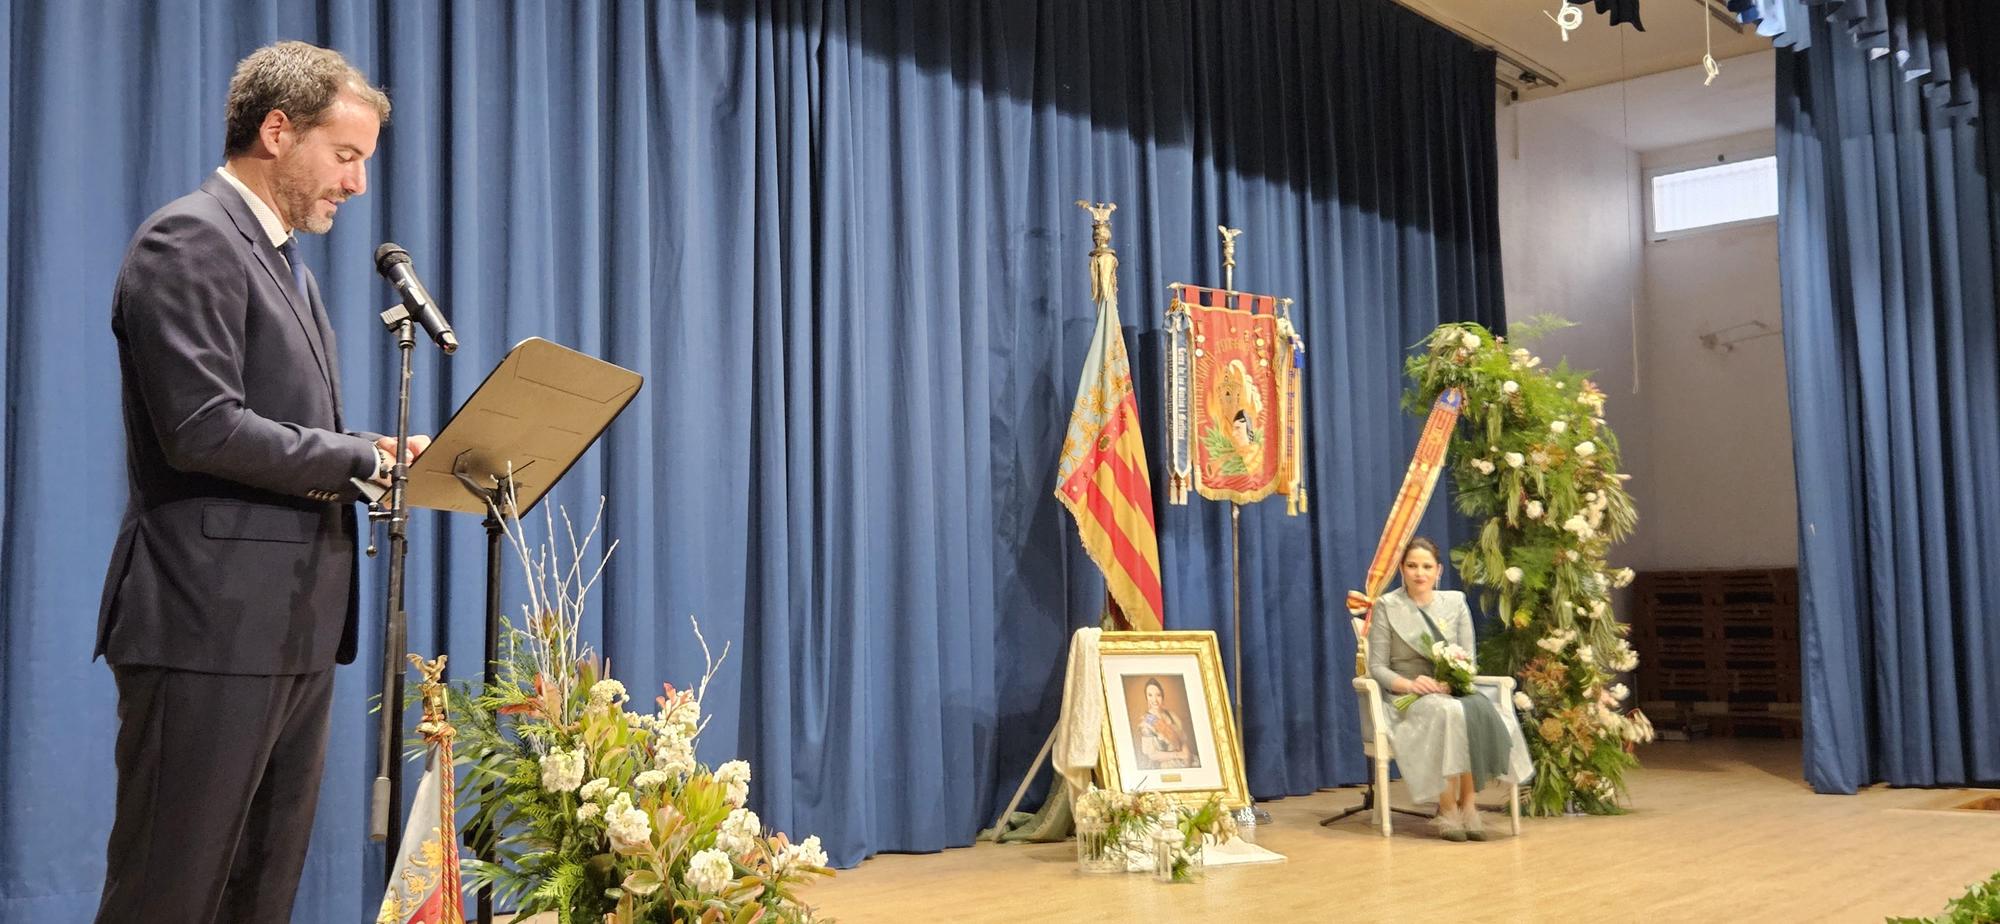 Honores de fallera mayor para Carmen Martín Carbonell